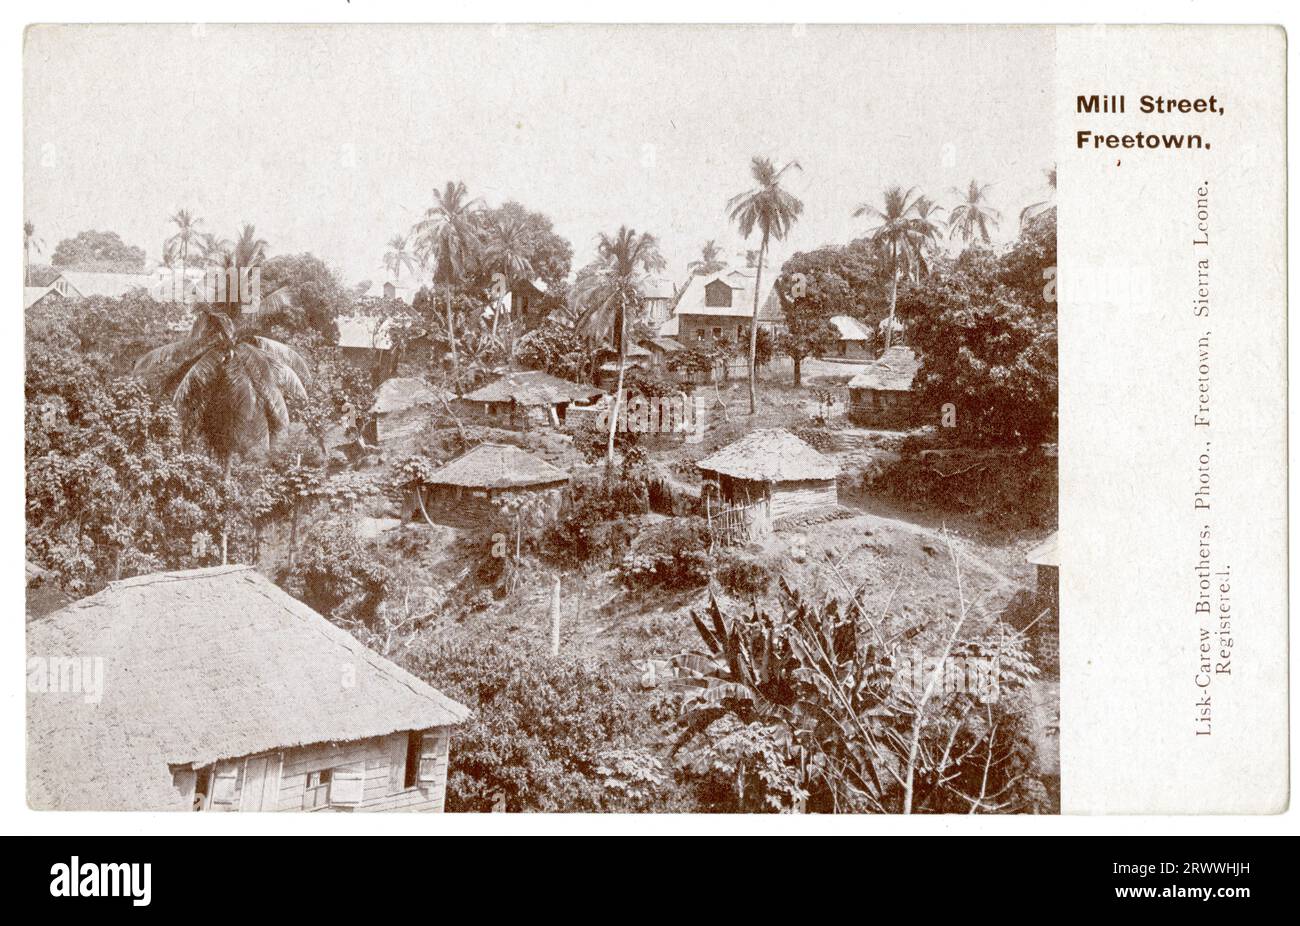 Postkartenansicht der Mill Street in Freetown mit kleinen Häusern, die zwischen hohen Bäumen und größeren Gebäuden im Kolonialstil im Hintergrund liegen. Gedruckte Beschriftung: Mill Street, Freetown. Stockfoto